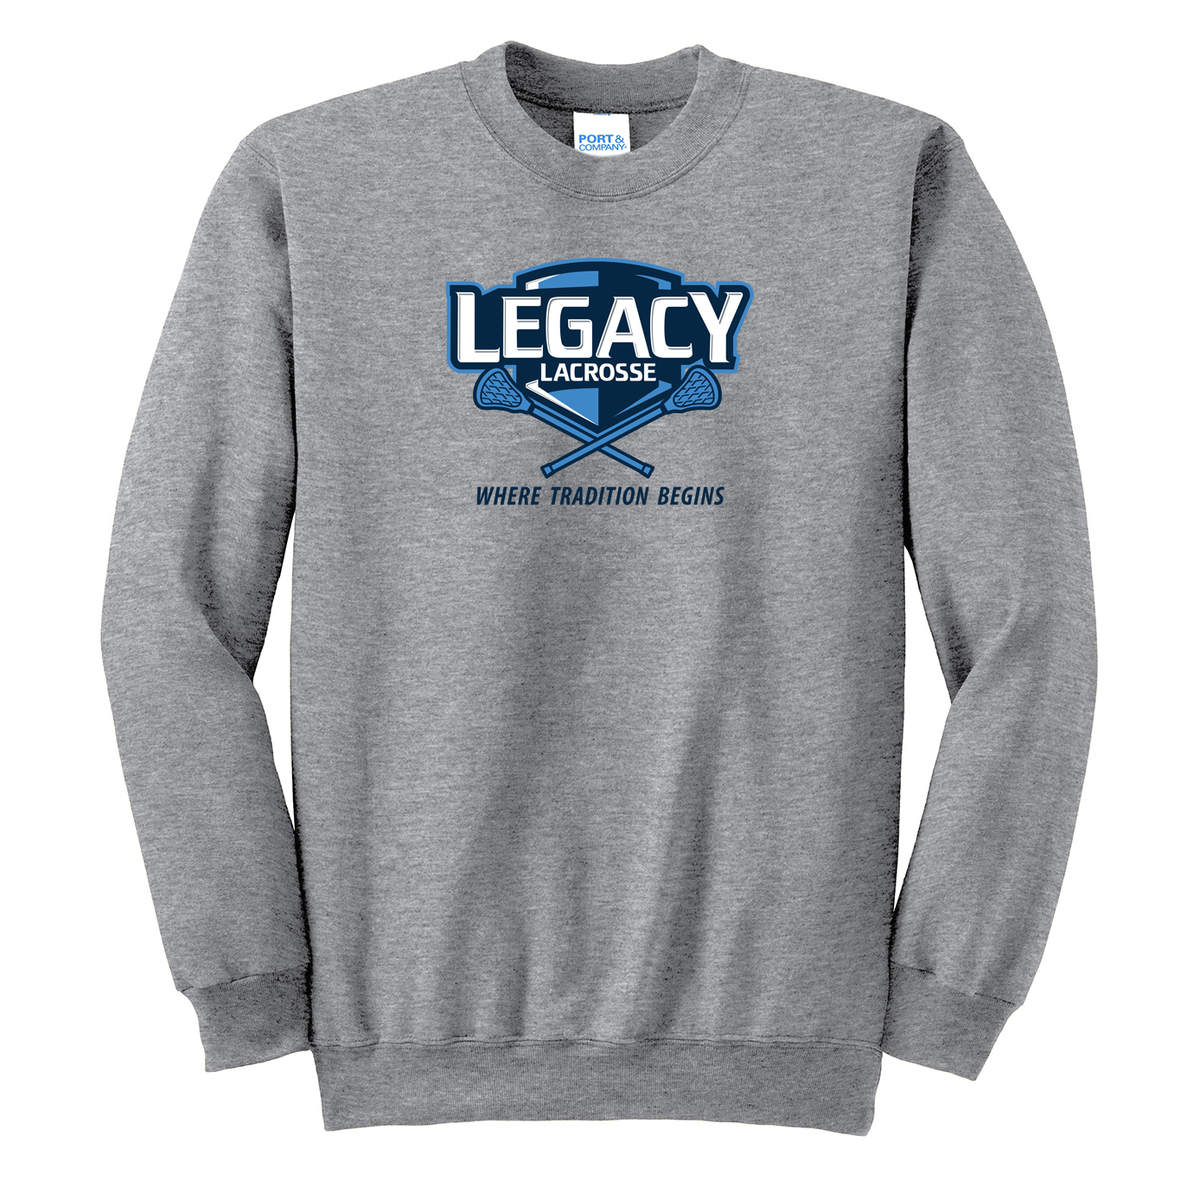 Legacy Lacrosse Crew Neck Sweater